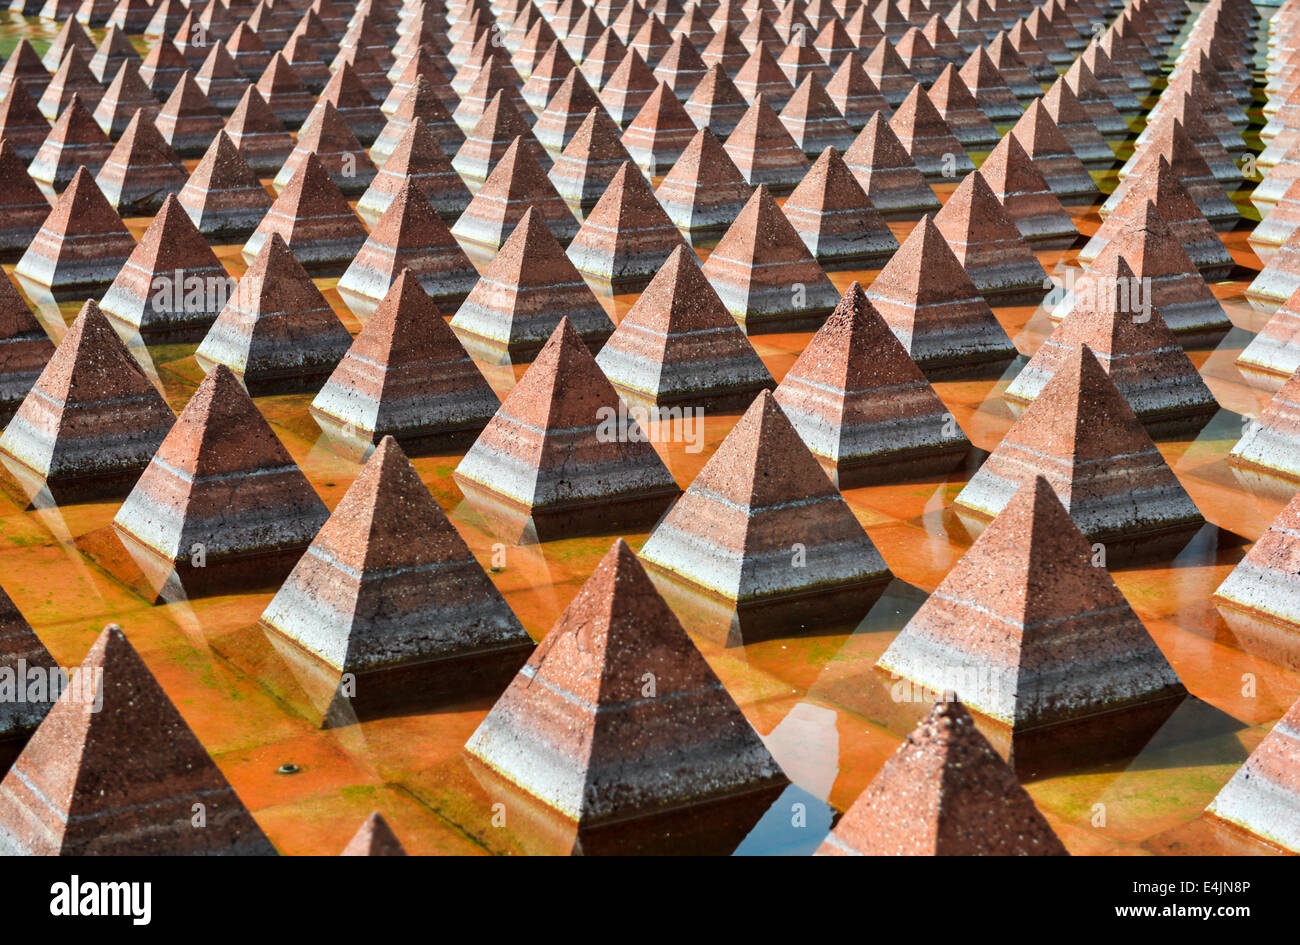 Plaza Juarez, Mexico, Mexique. Un ensemble de 1034 pyramides rougeâtre dans un large bassin dans Plaza Juarez. Banque D'Images